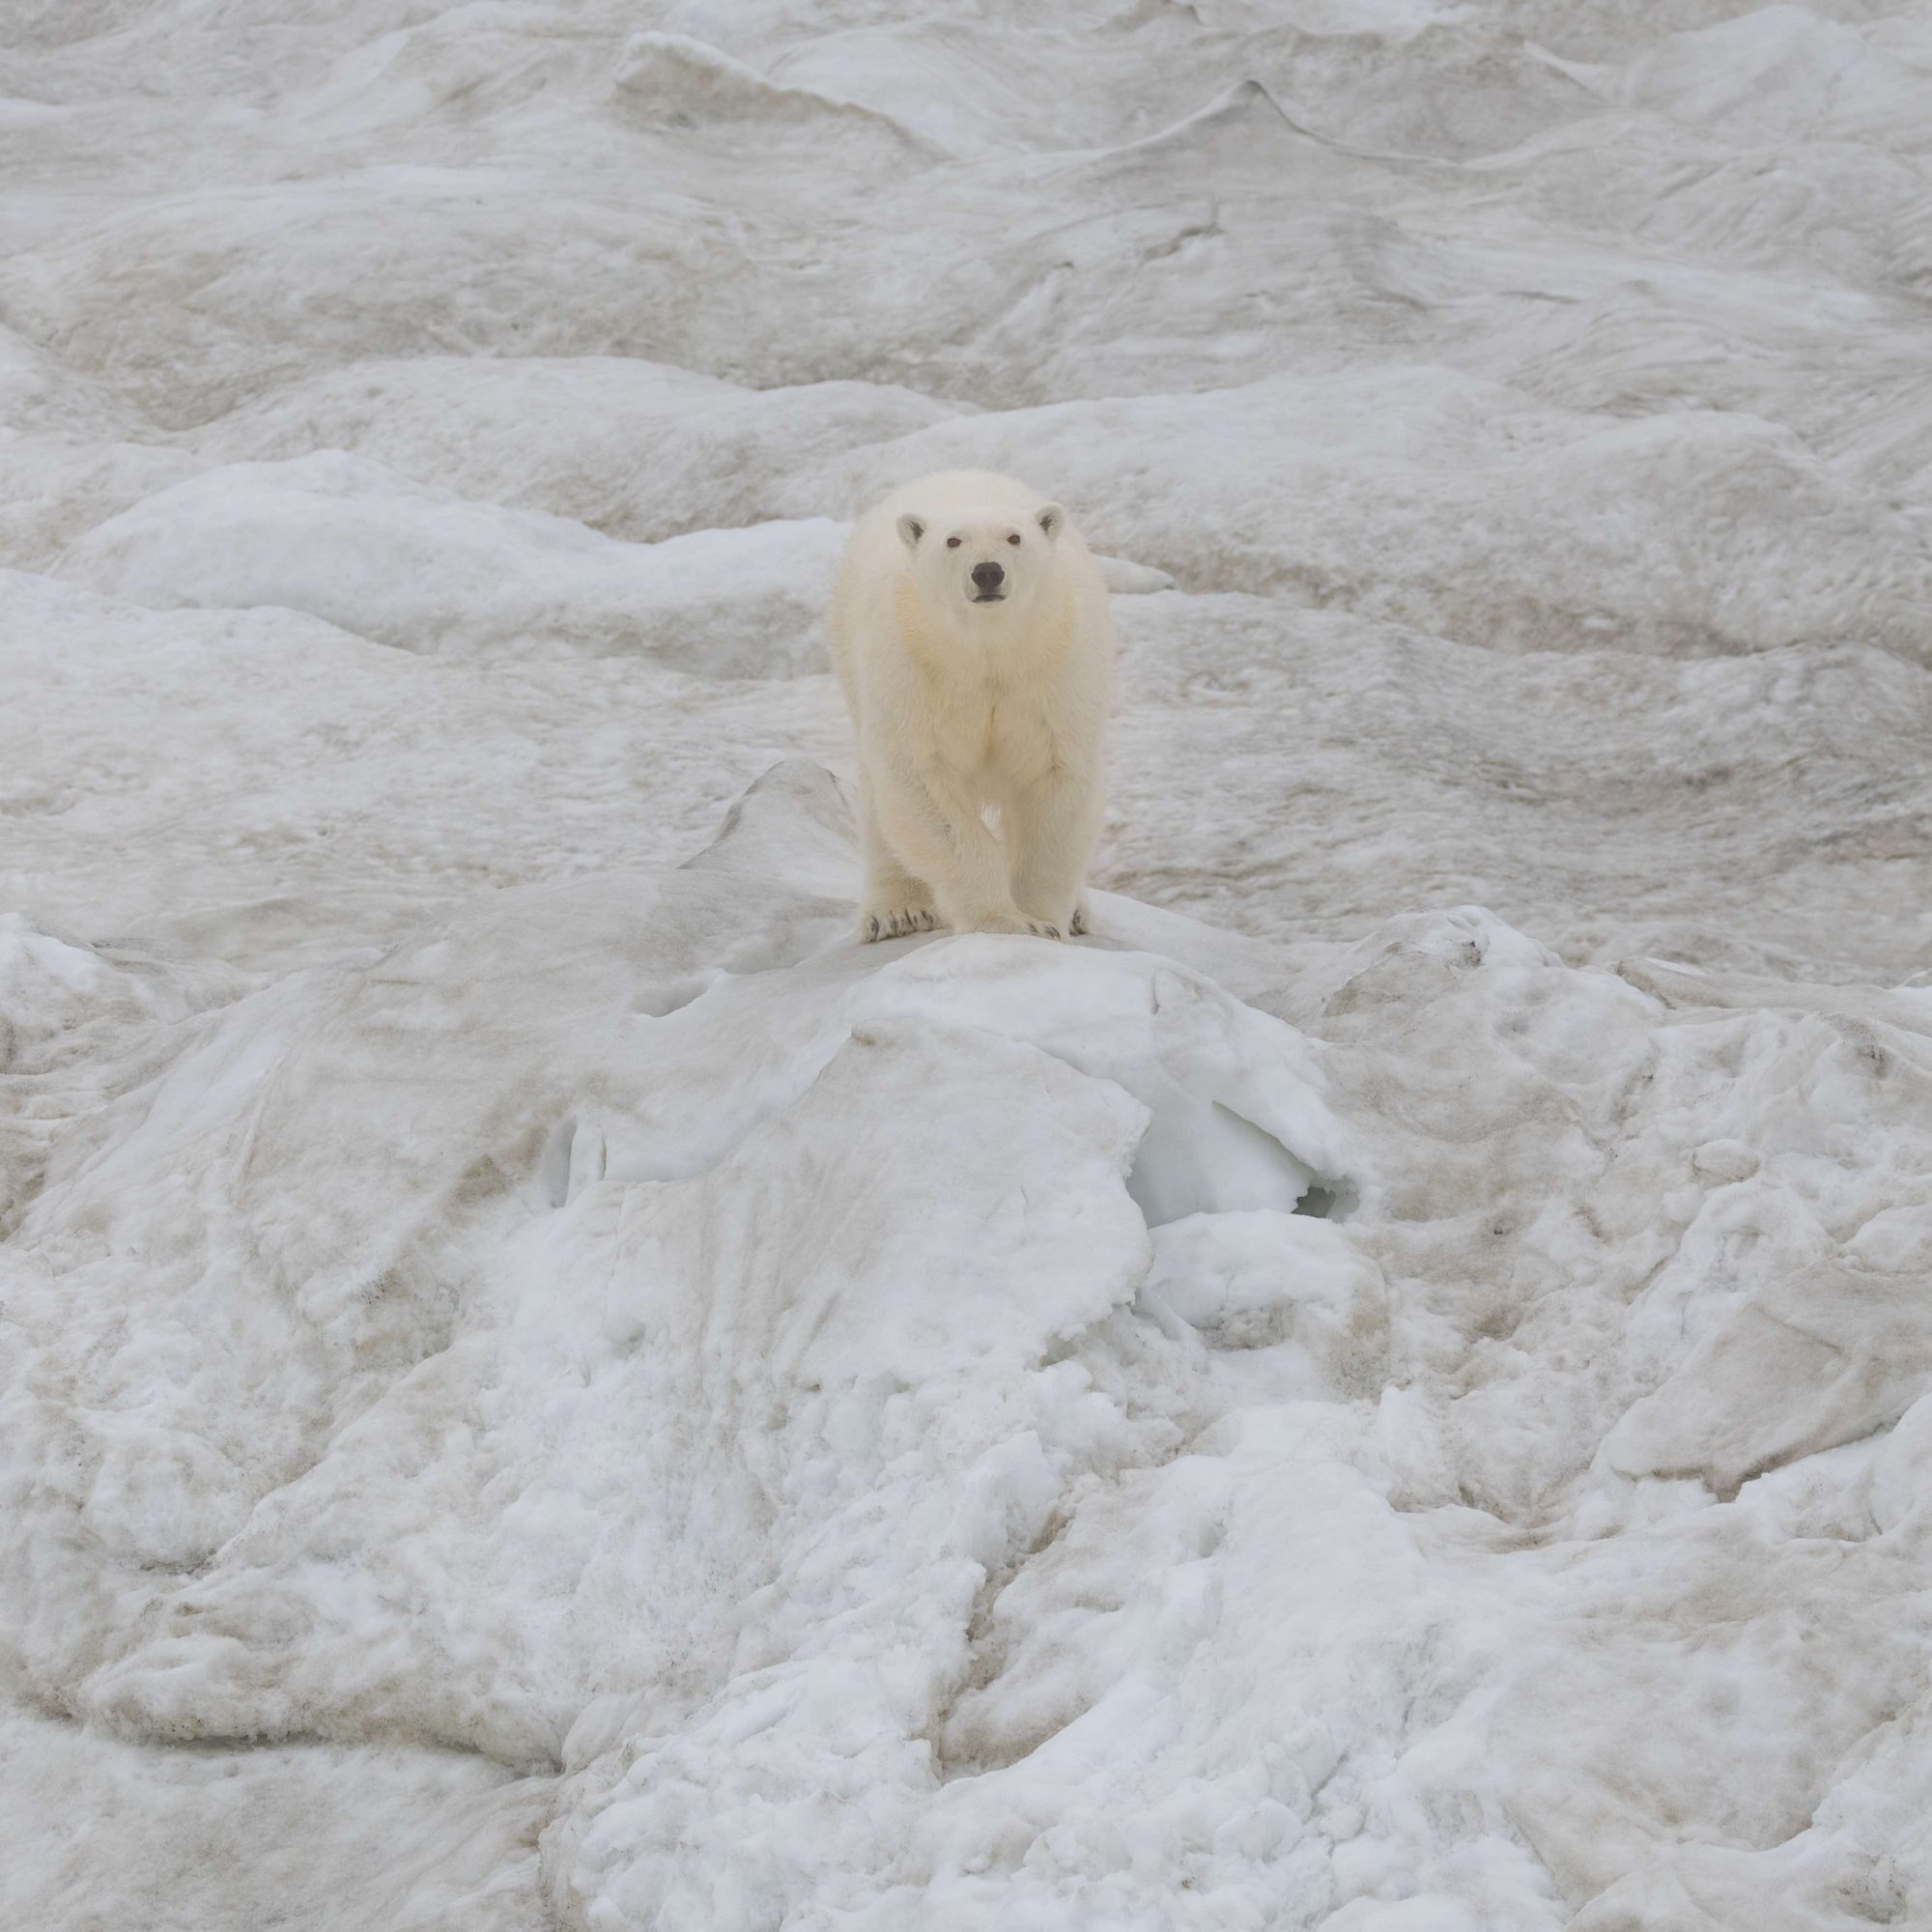 Polar Bear on a large ice floe – Wrangel Island 2018